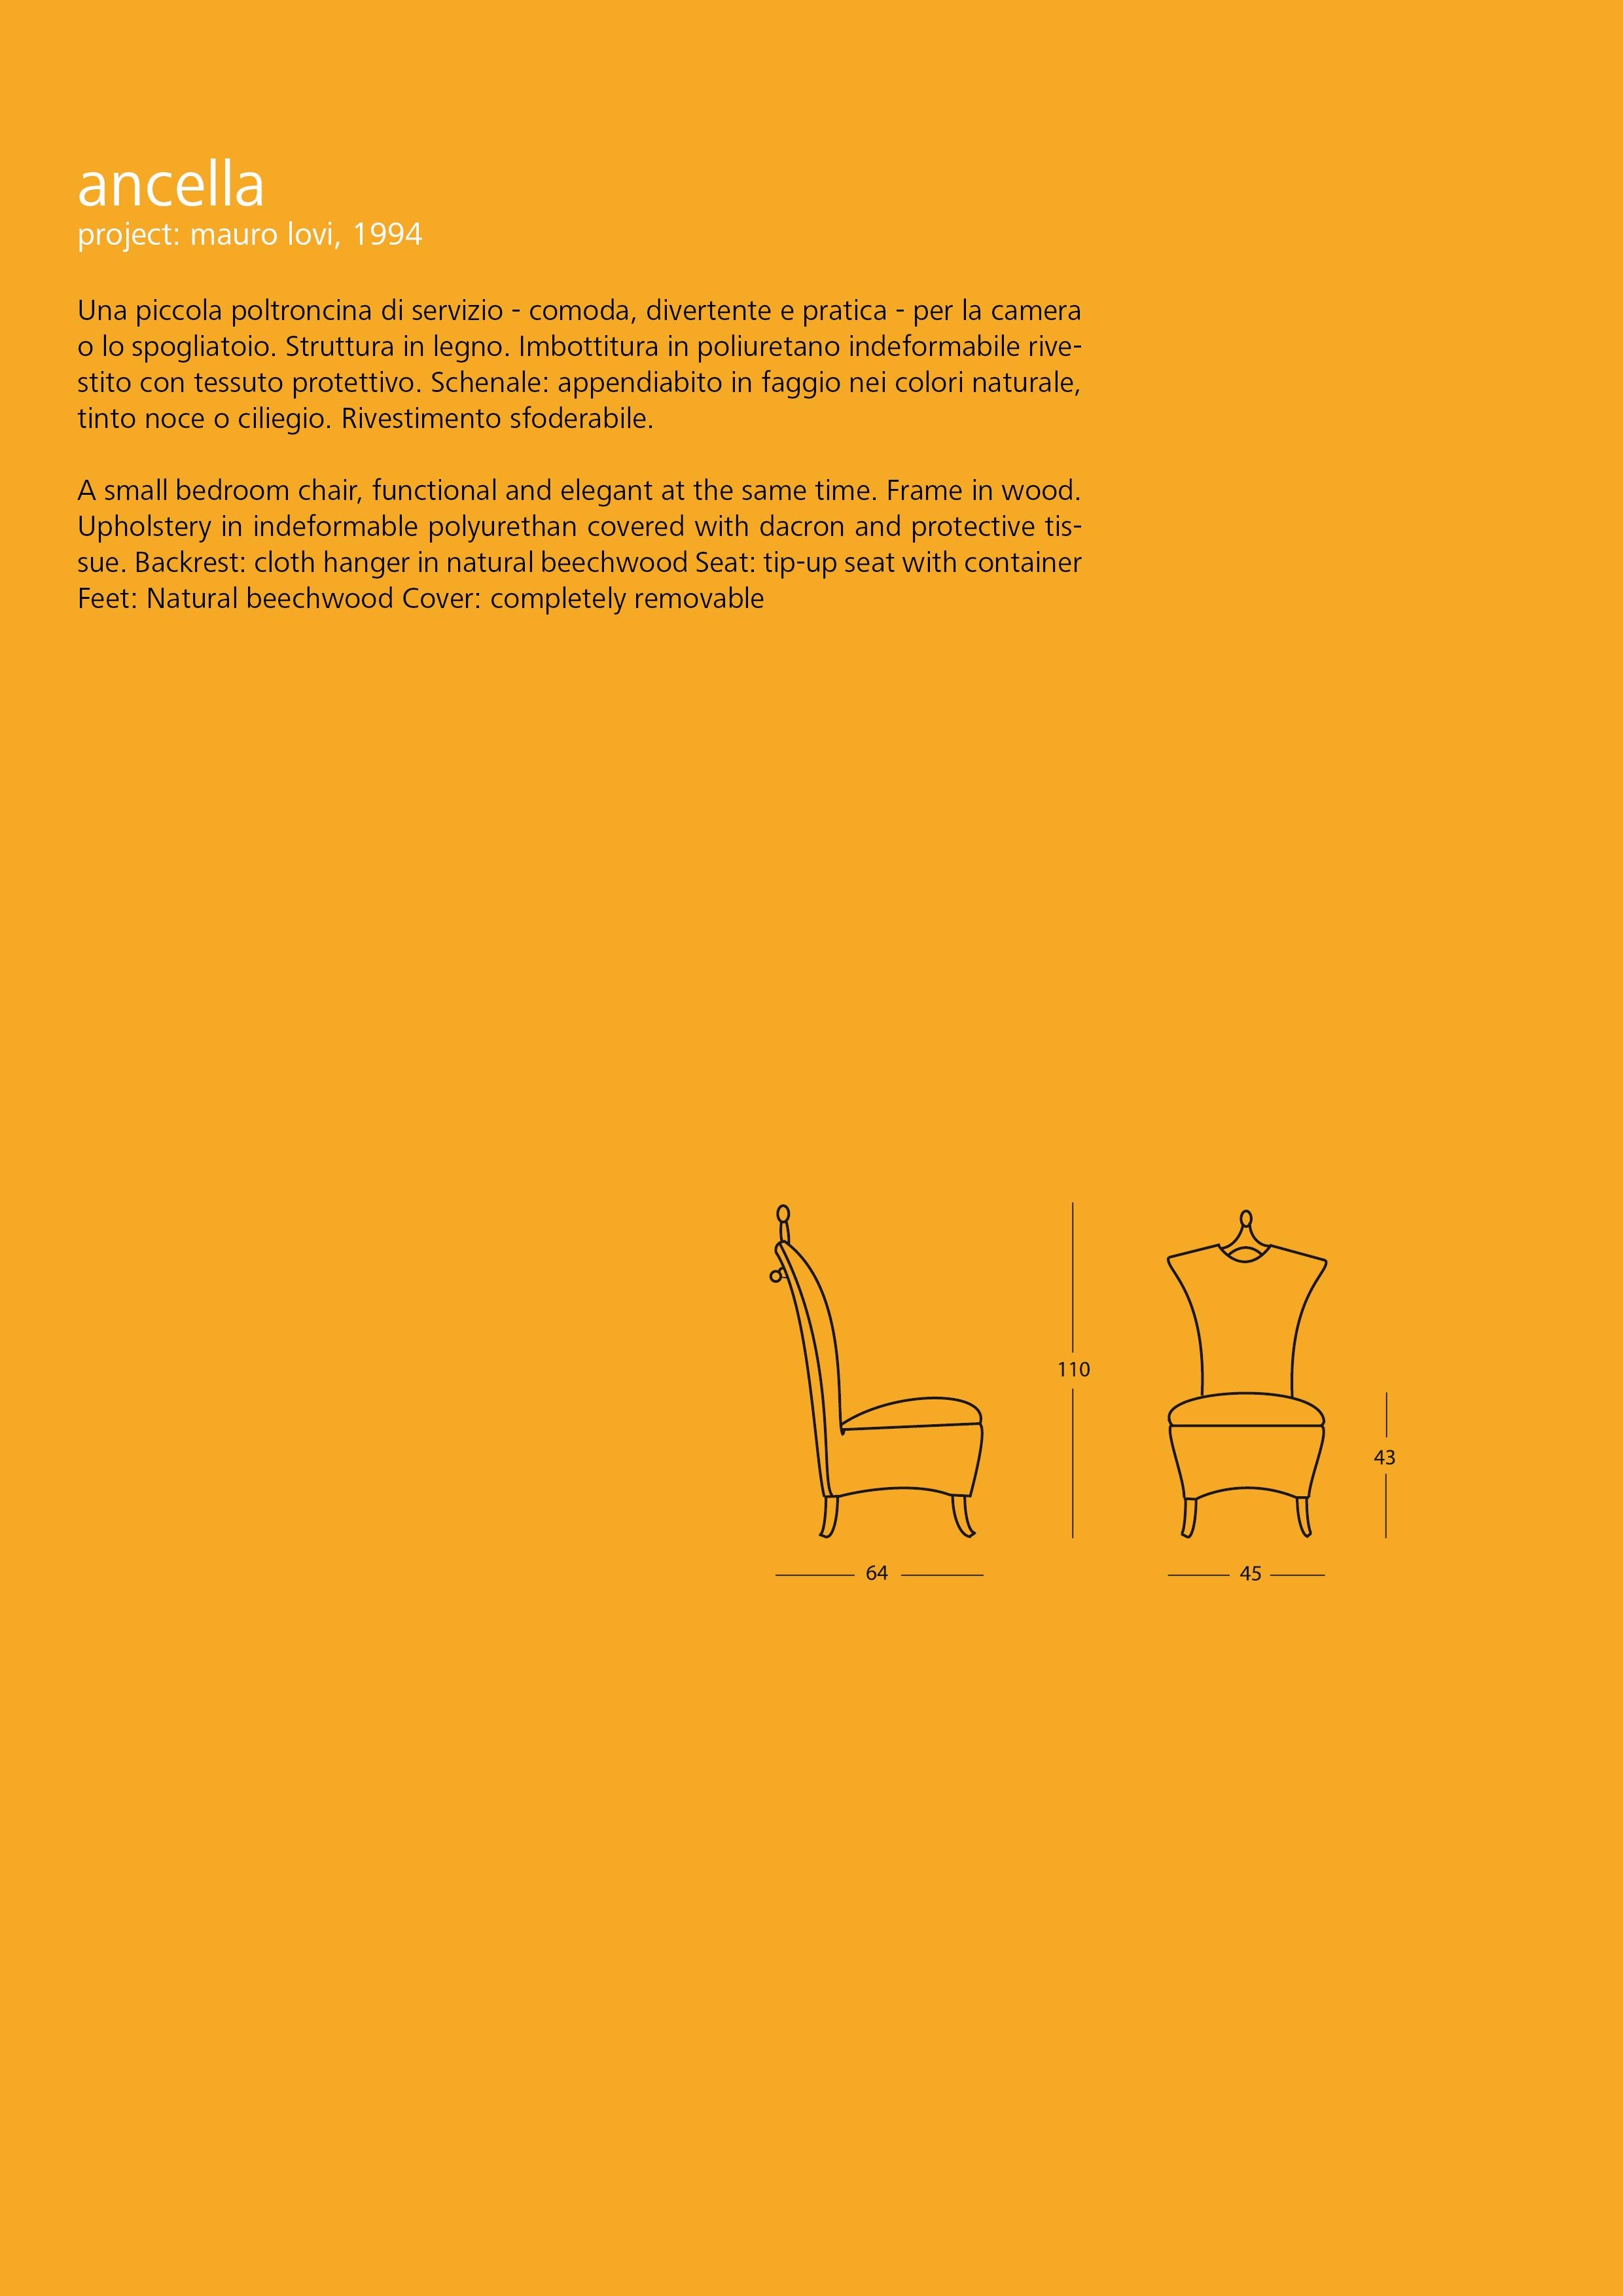 Modern 1994's Ancella Armchair project by M. Lovi for Giovannetti Collezioni For Sale